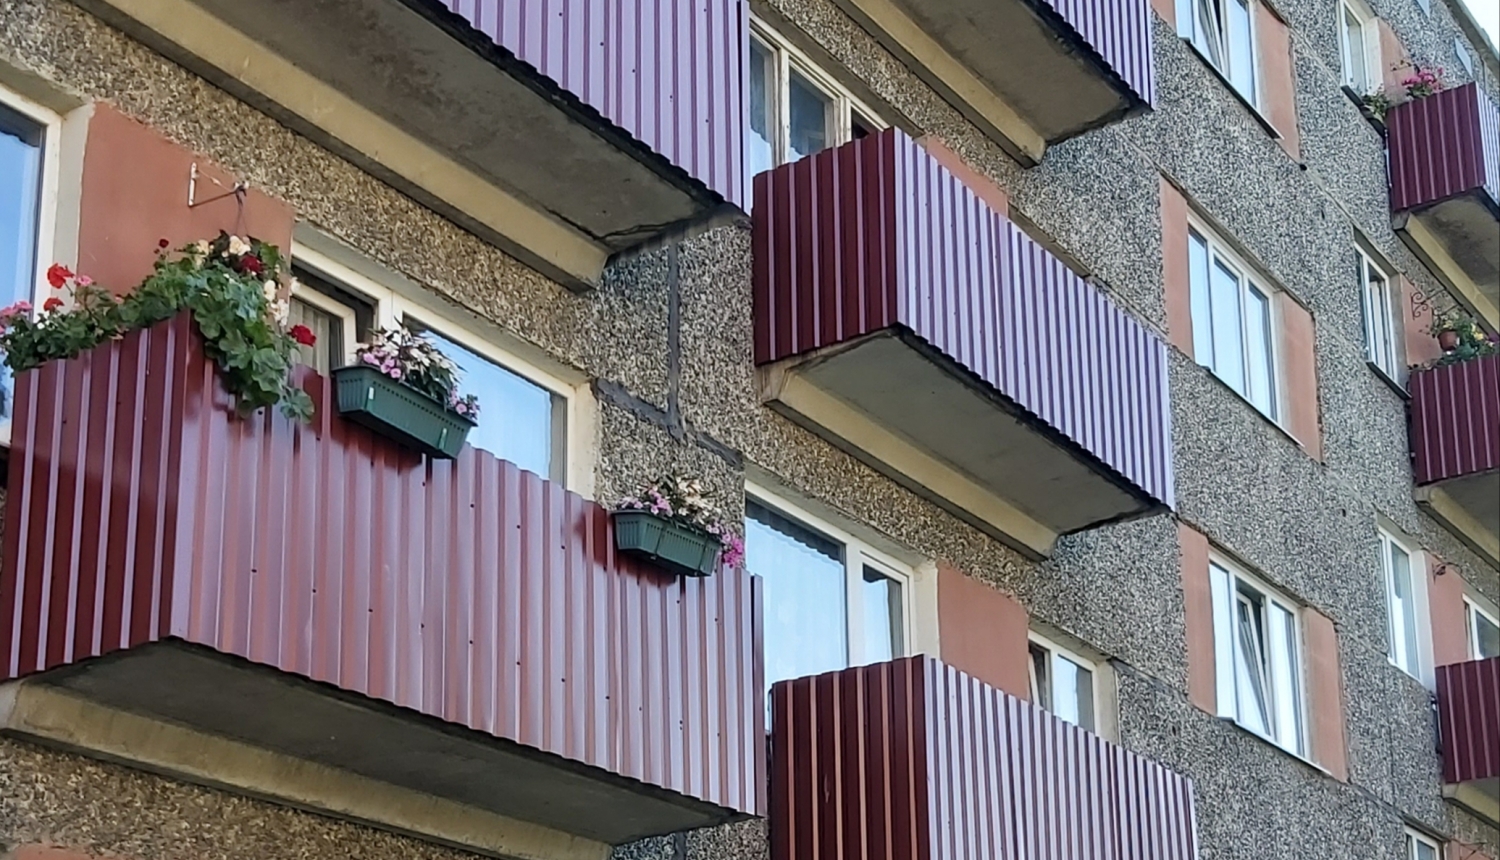 Daudzdzīvokļu nama balkoni pēc atjaunošanas